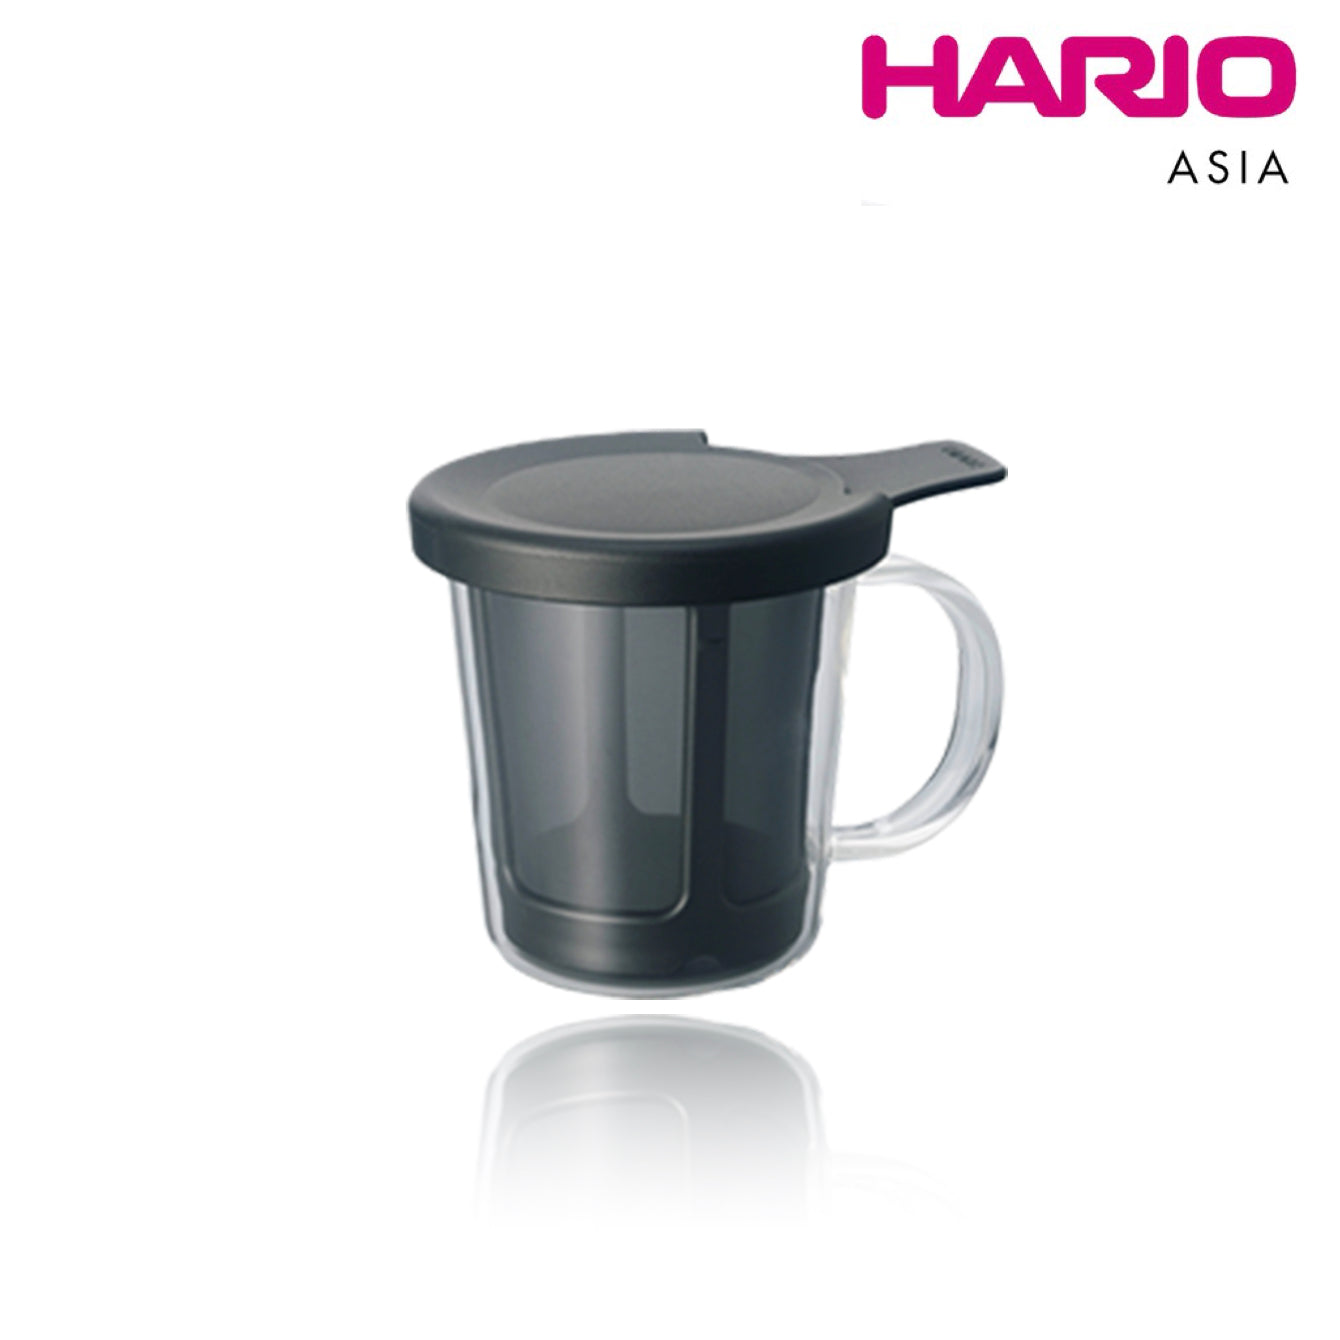 Hario One Cup Tea Maker Black